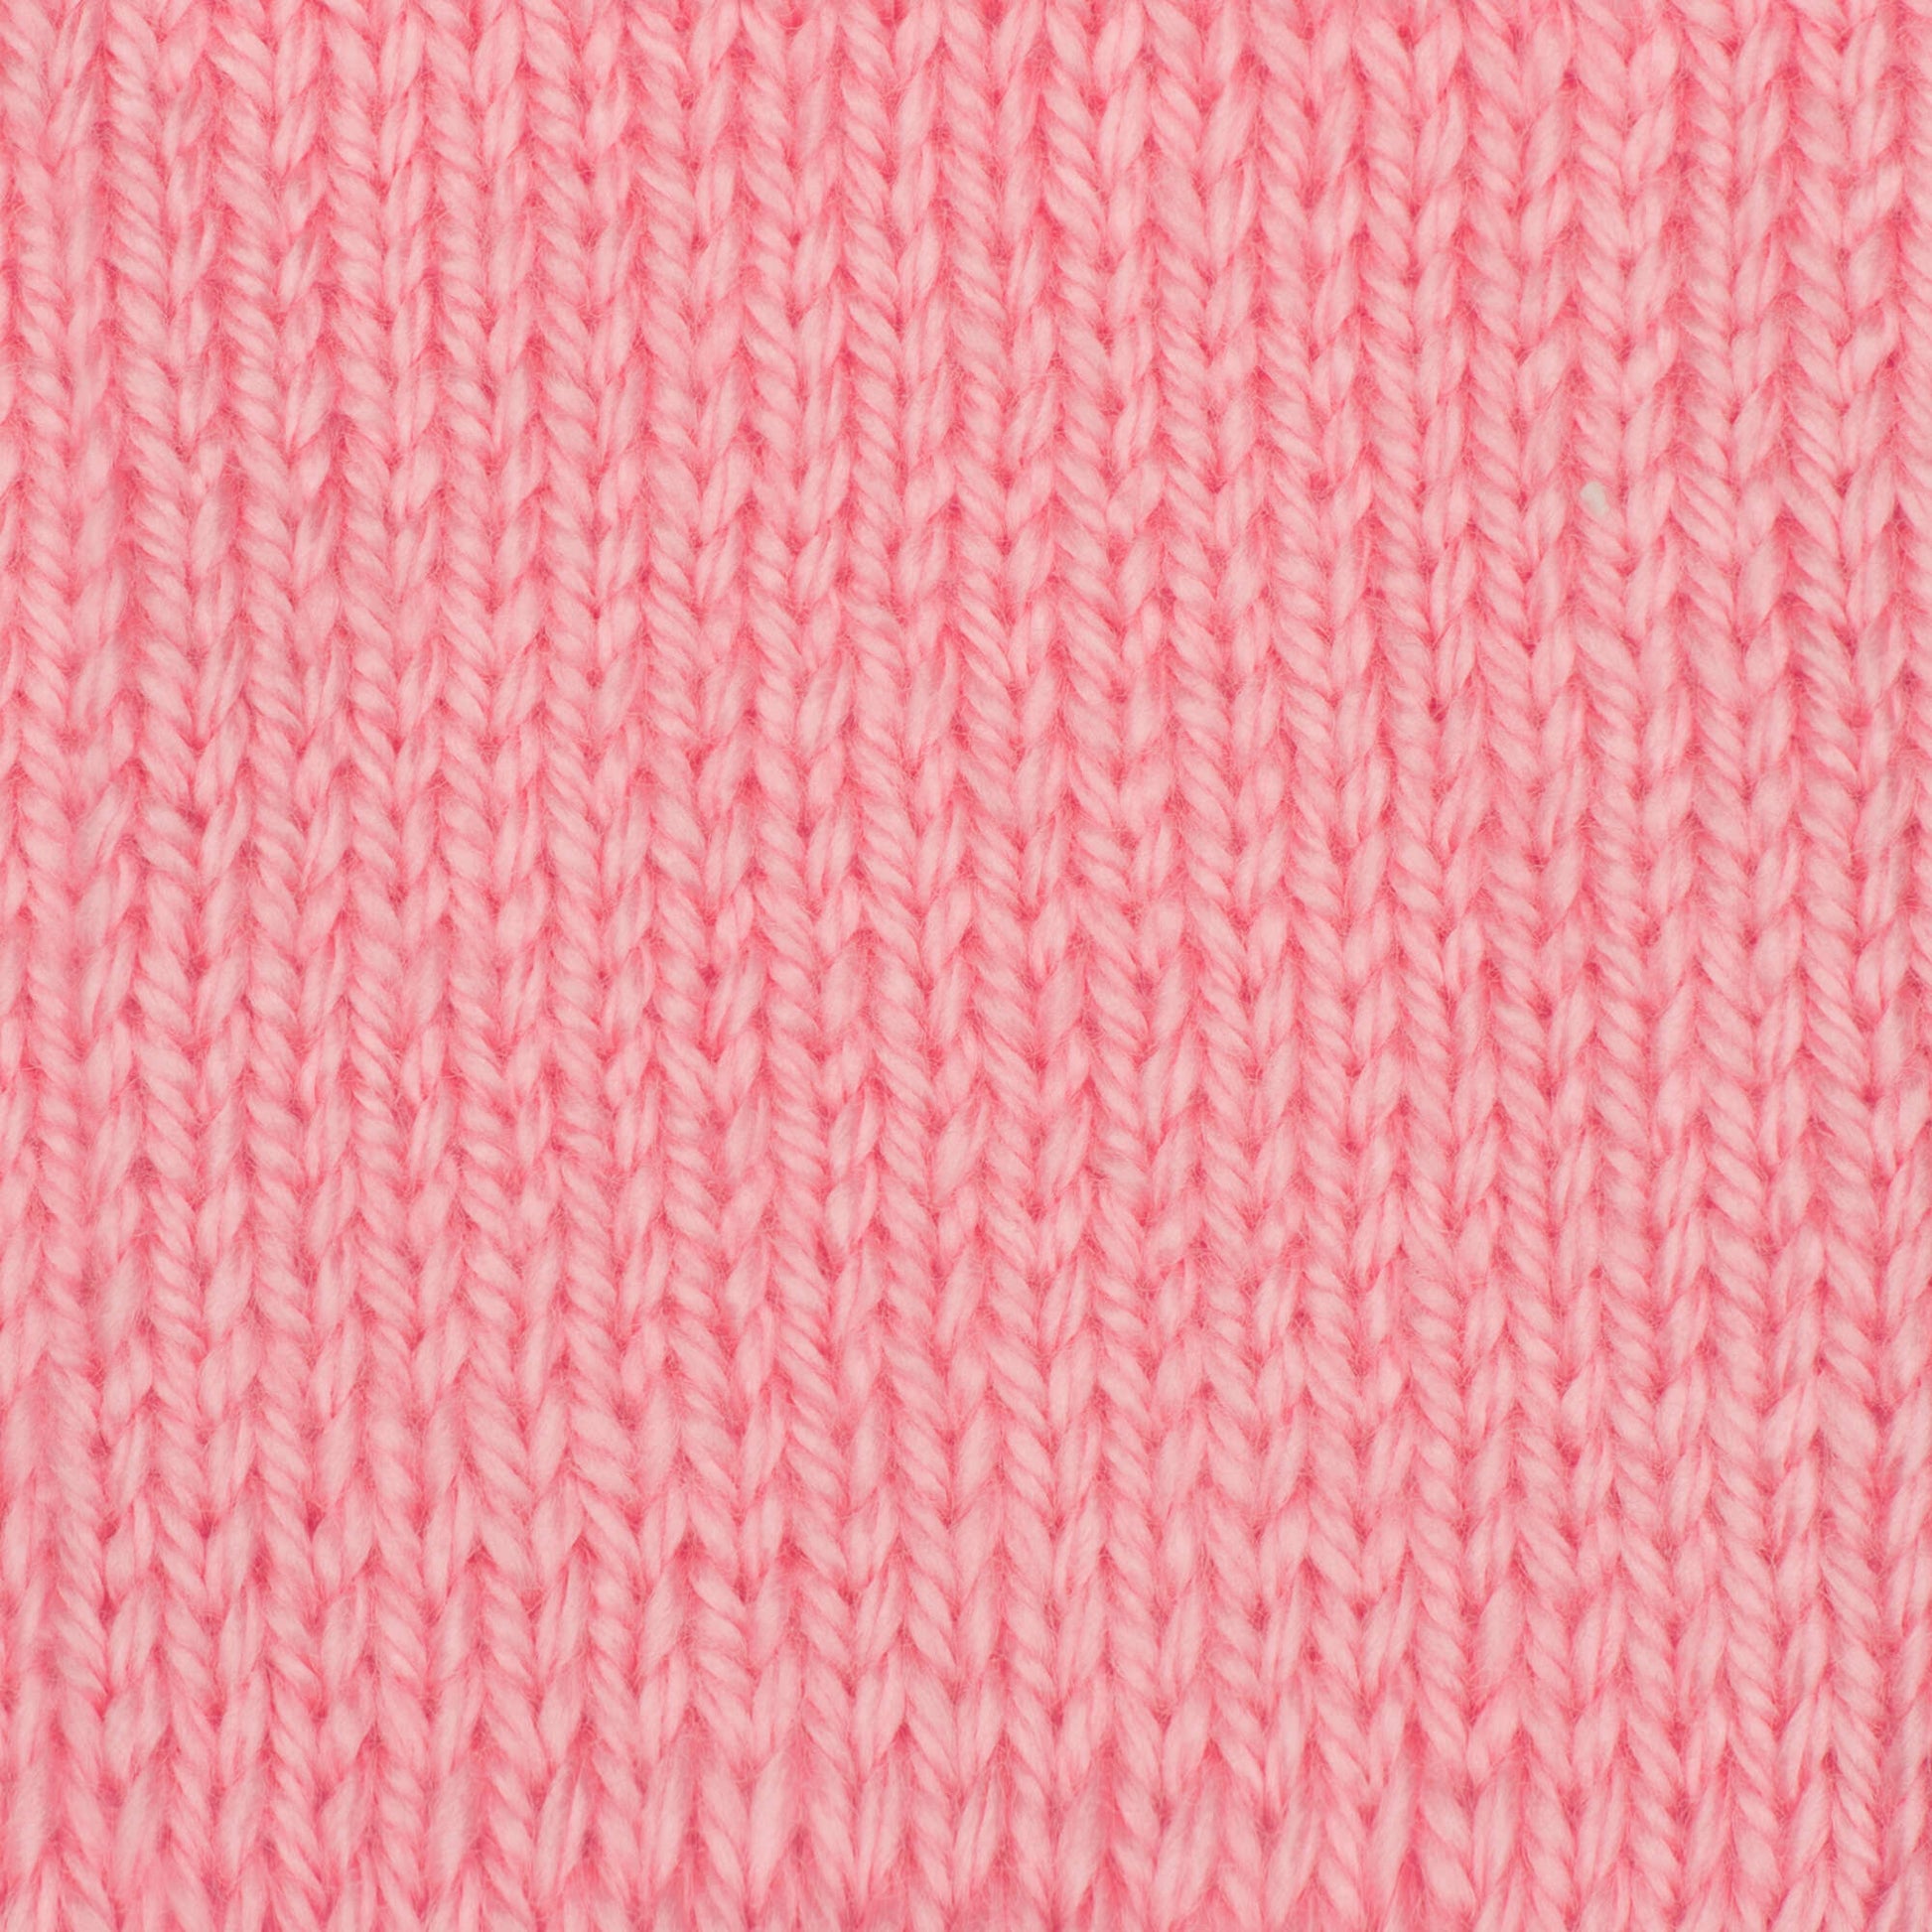 Bernat Softee Baby Yarn Prettiest Pink